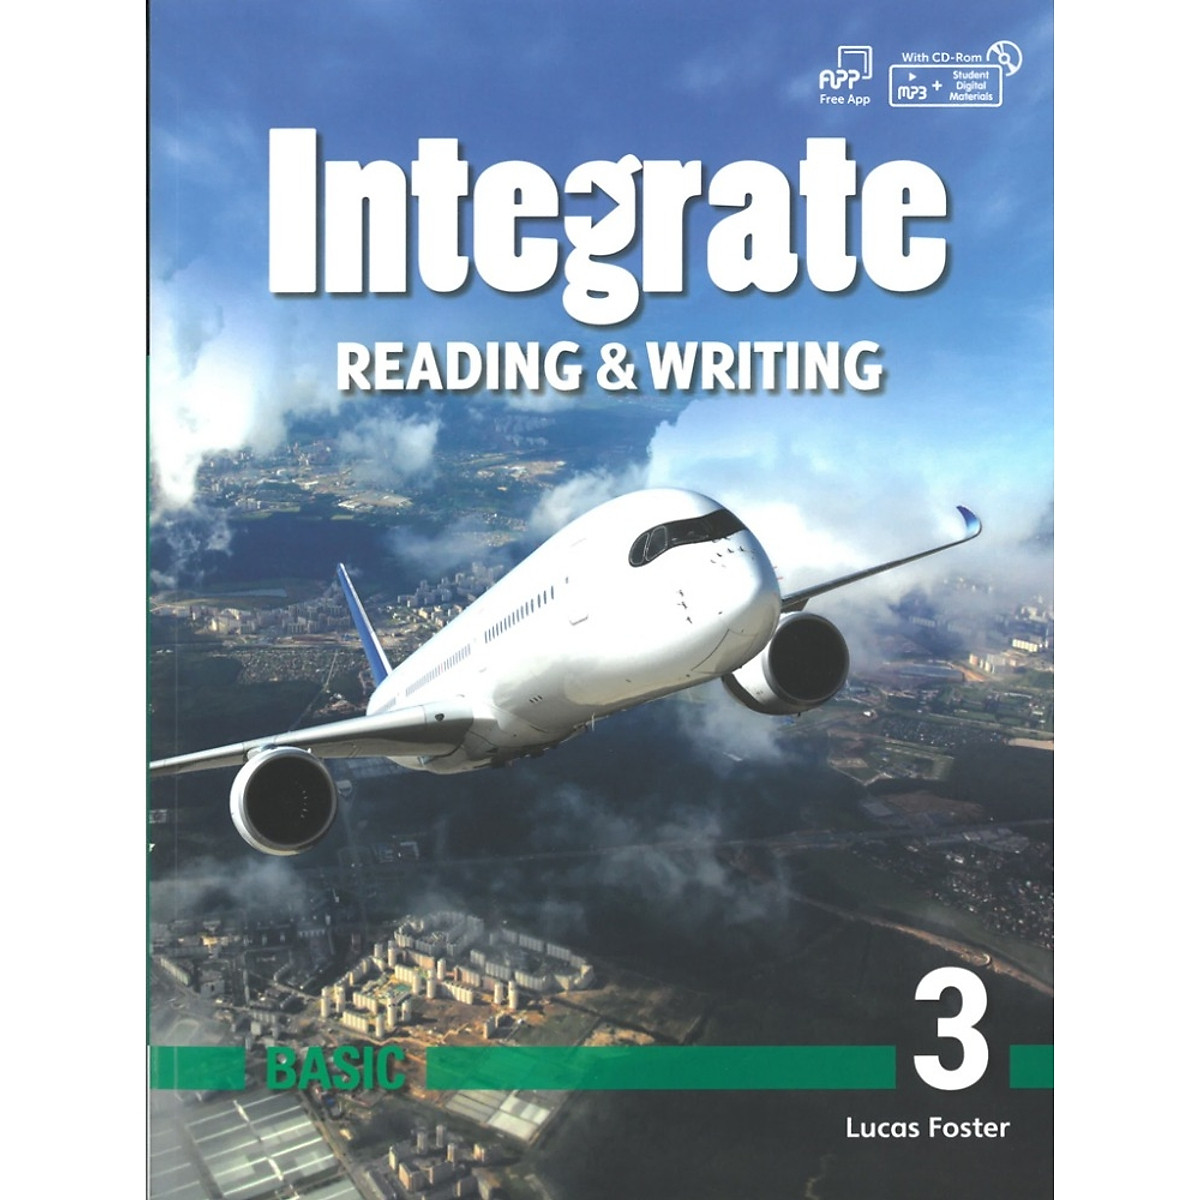 Sách Integrate : Reading & Writing Basic 1,2,3,4 nhà xuất bản Compass Publishing - Student Book with Practice Book A1+ - A2 + Free audio mp3 - Sách chuẩn nhập khẩu trực tiếp từ NXB Compass